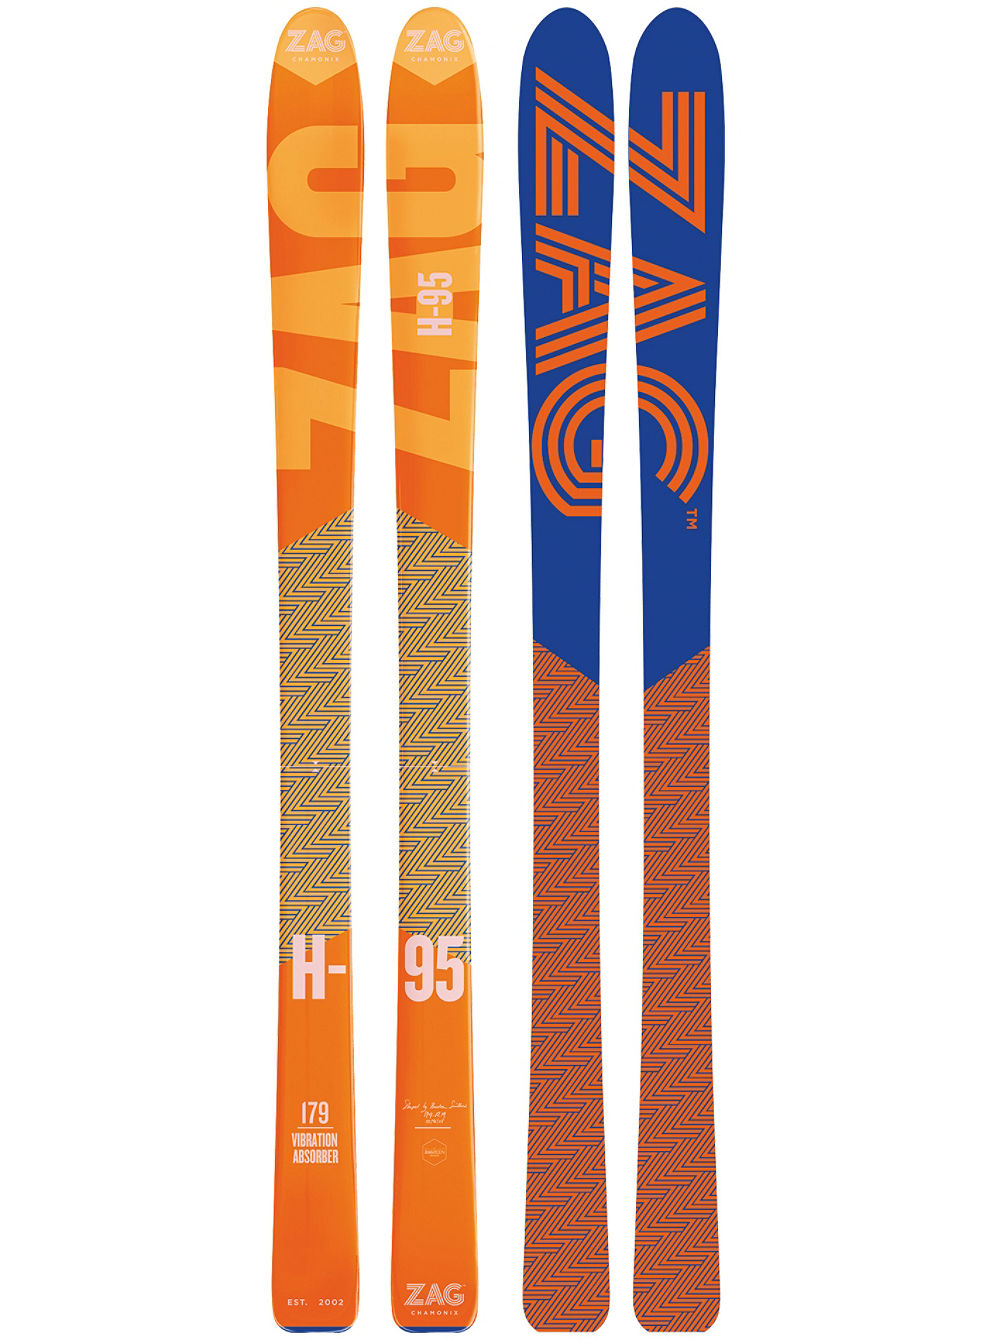 H-95 170 2019 Skidor